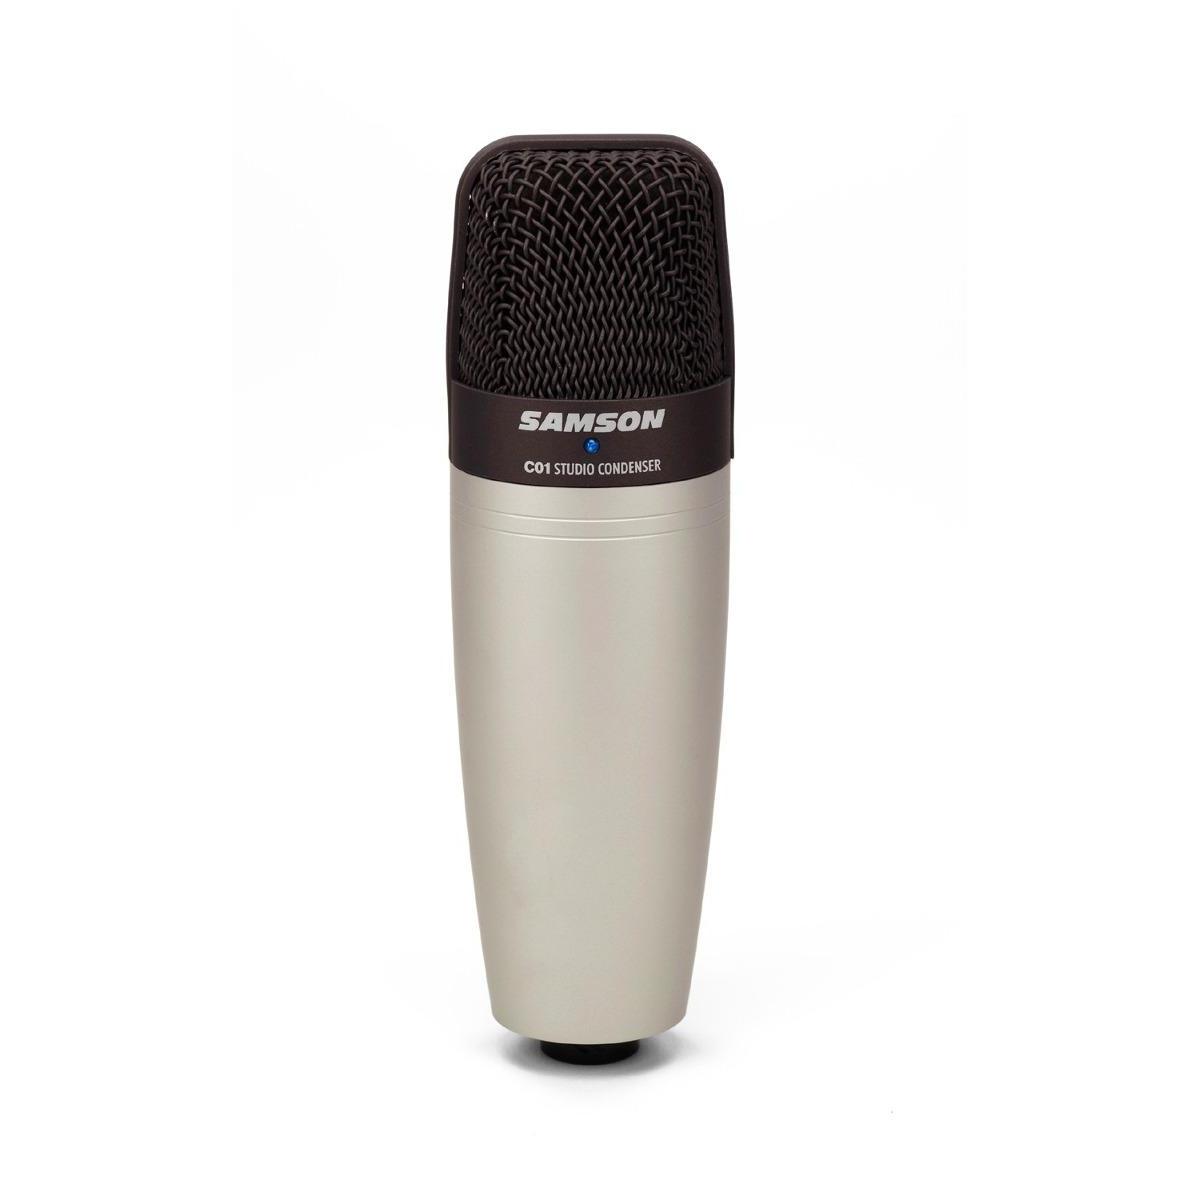  Si buscas Microfono Condensador Samson C01 puedes comprarlo con GUITAROUTLET está en venta al mejor precio